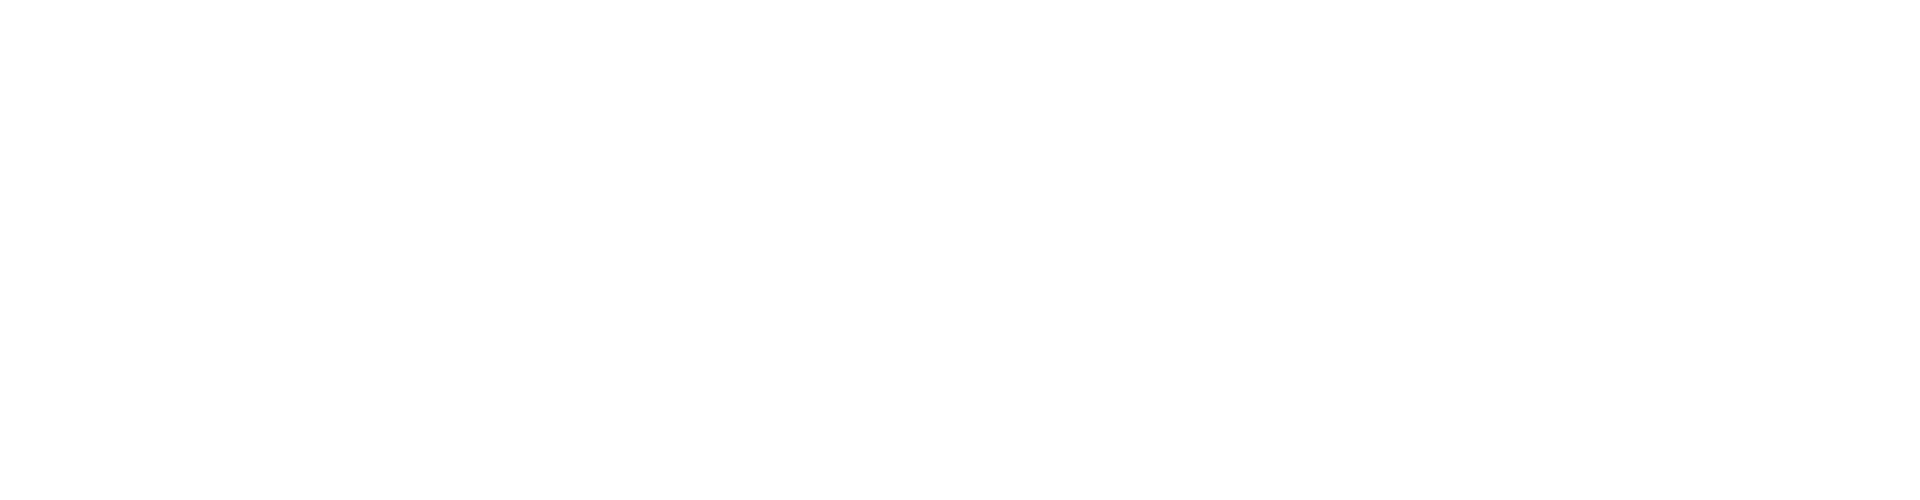 The Scuffed Series 13 - Shotgun in the Dark